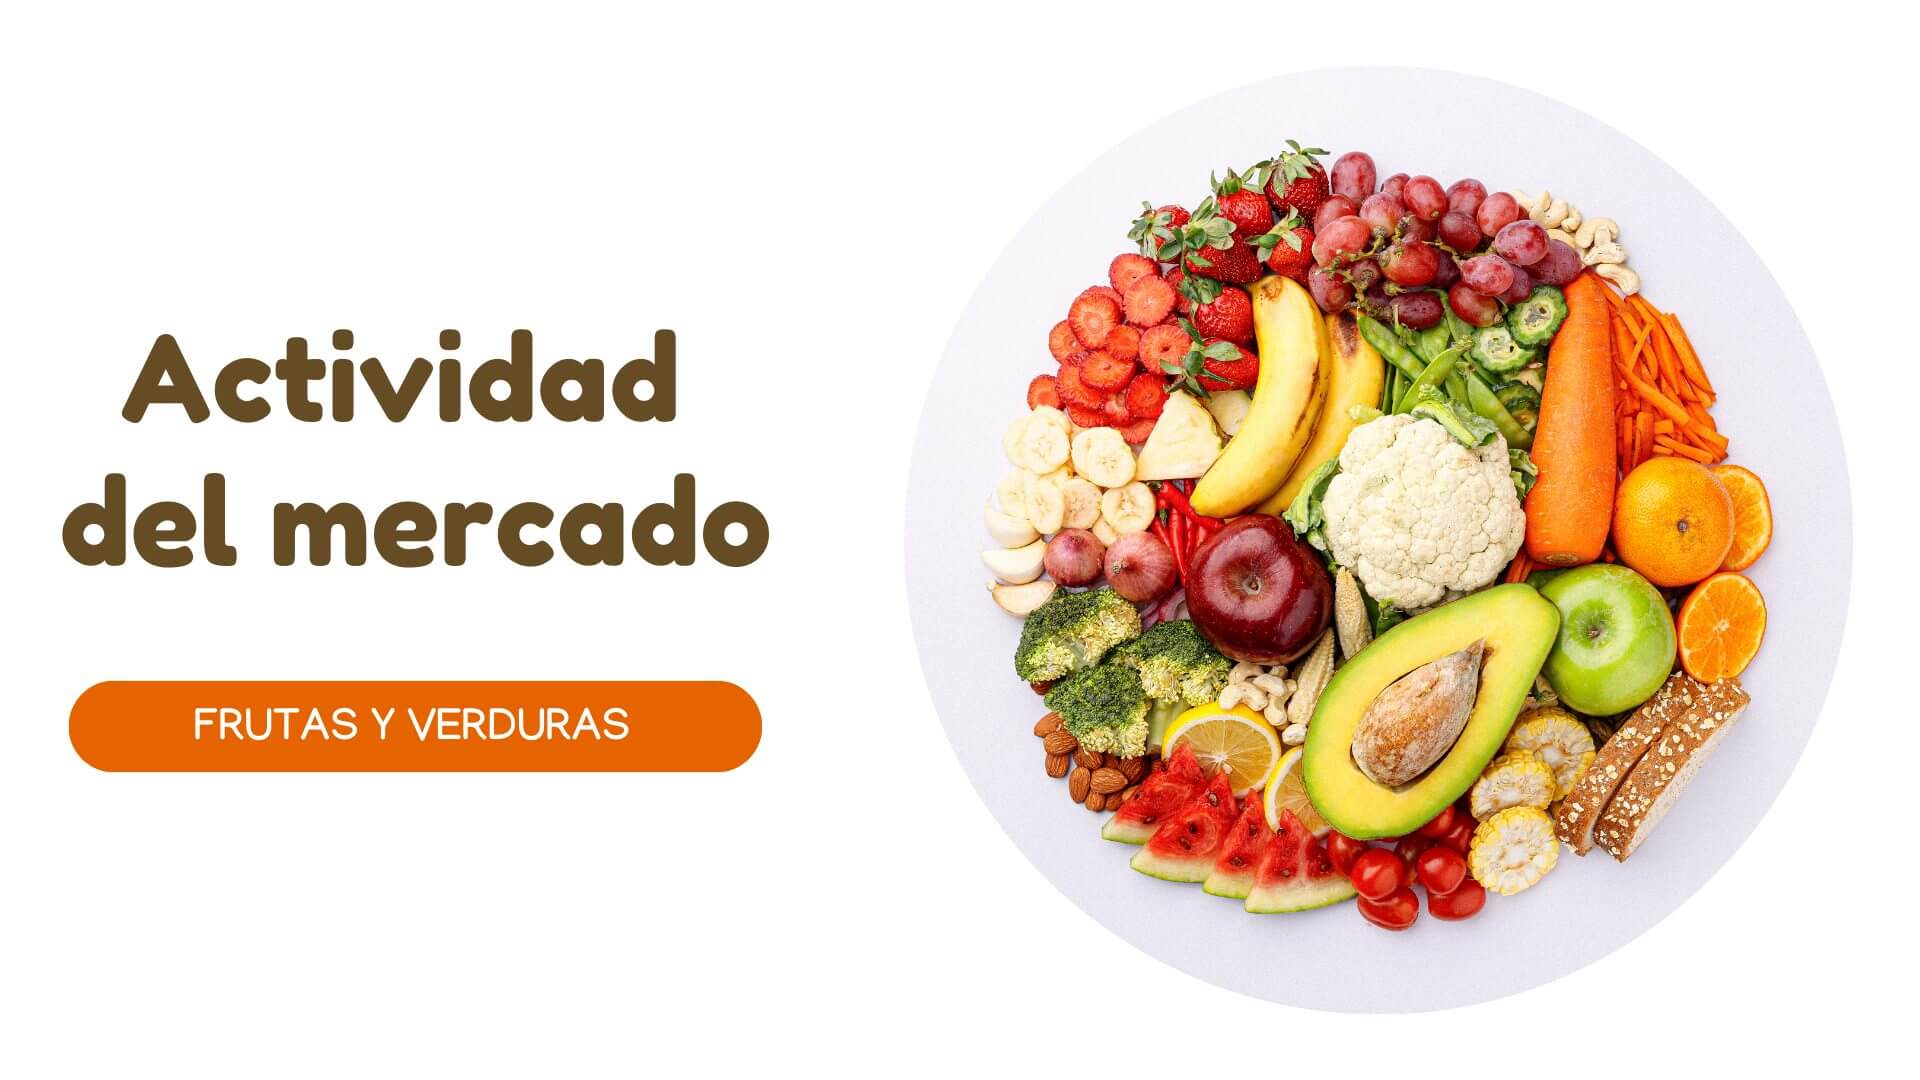 Instituto Hispánico de Murcia - Las frutas y verduras del mercado